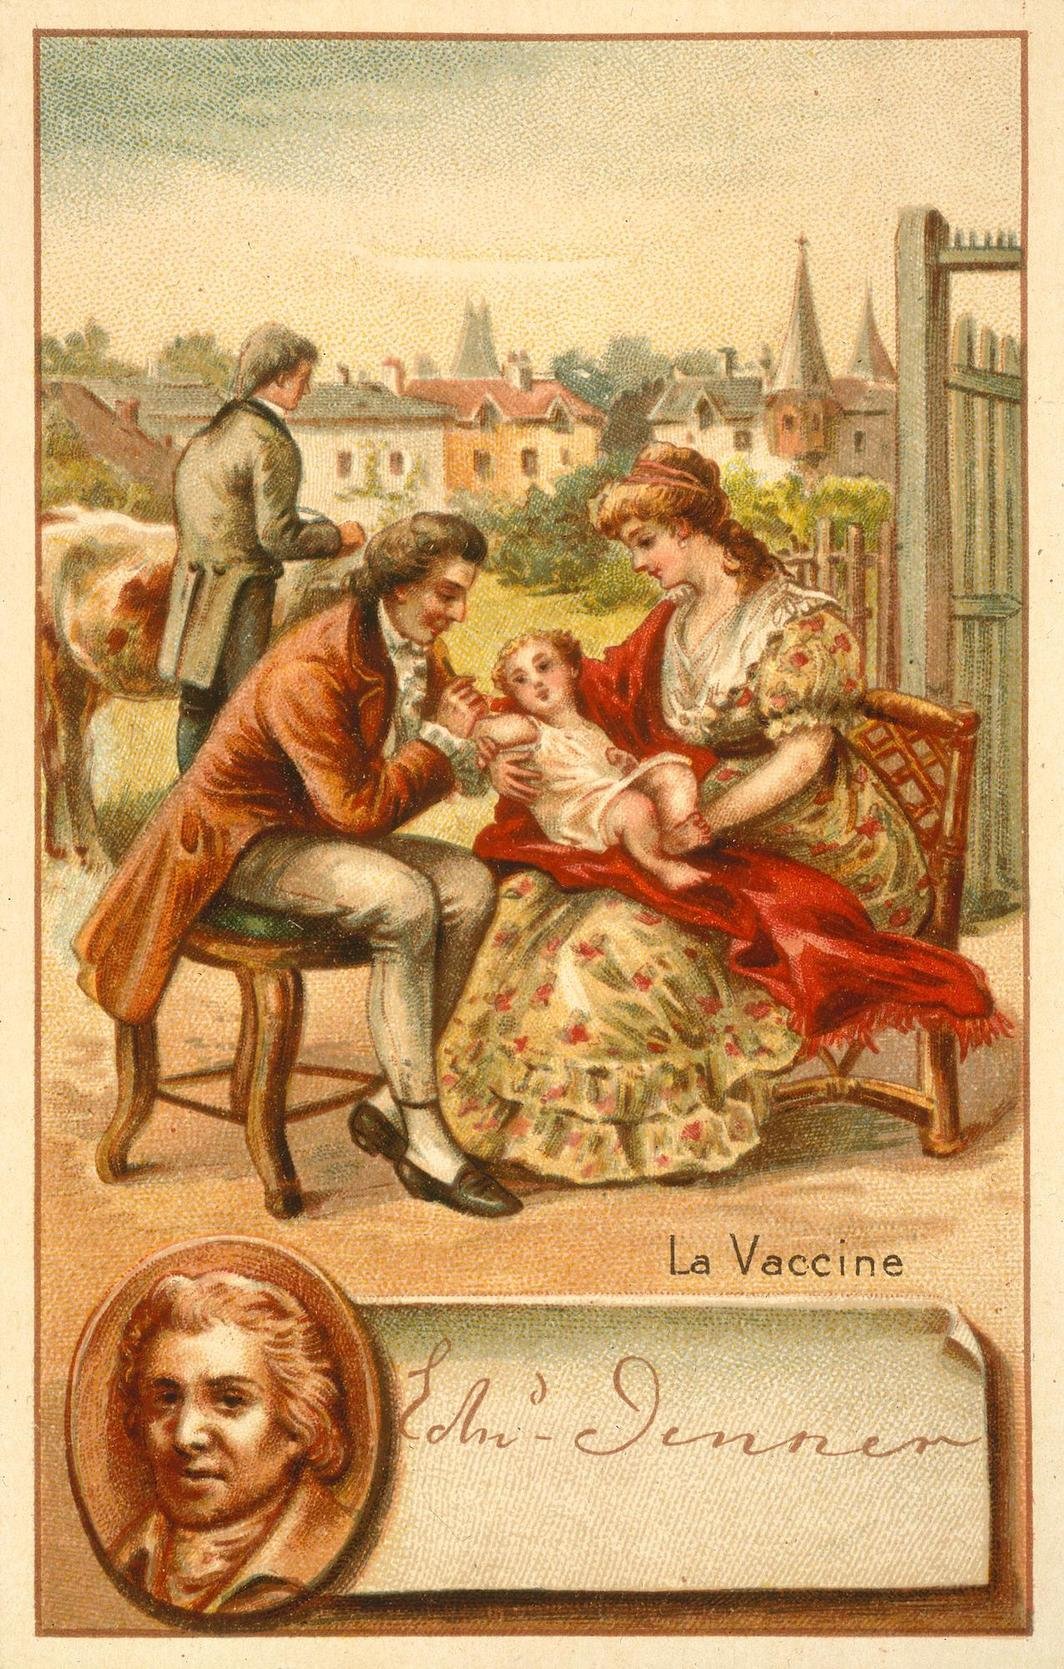 爱德华·詹纳正在给一位由母亲抱着的儿童注射疫苗，他们身后一个男人正从母牛身上提取牛痘. 作者不详，彩色平版印刷，5 1/2 x 3 1/2''. 图片：Wellcome Collection.